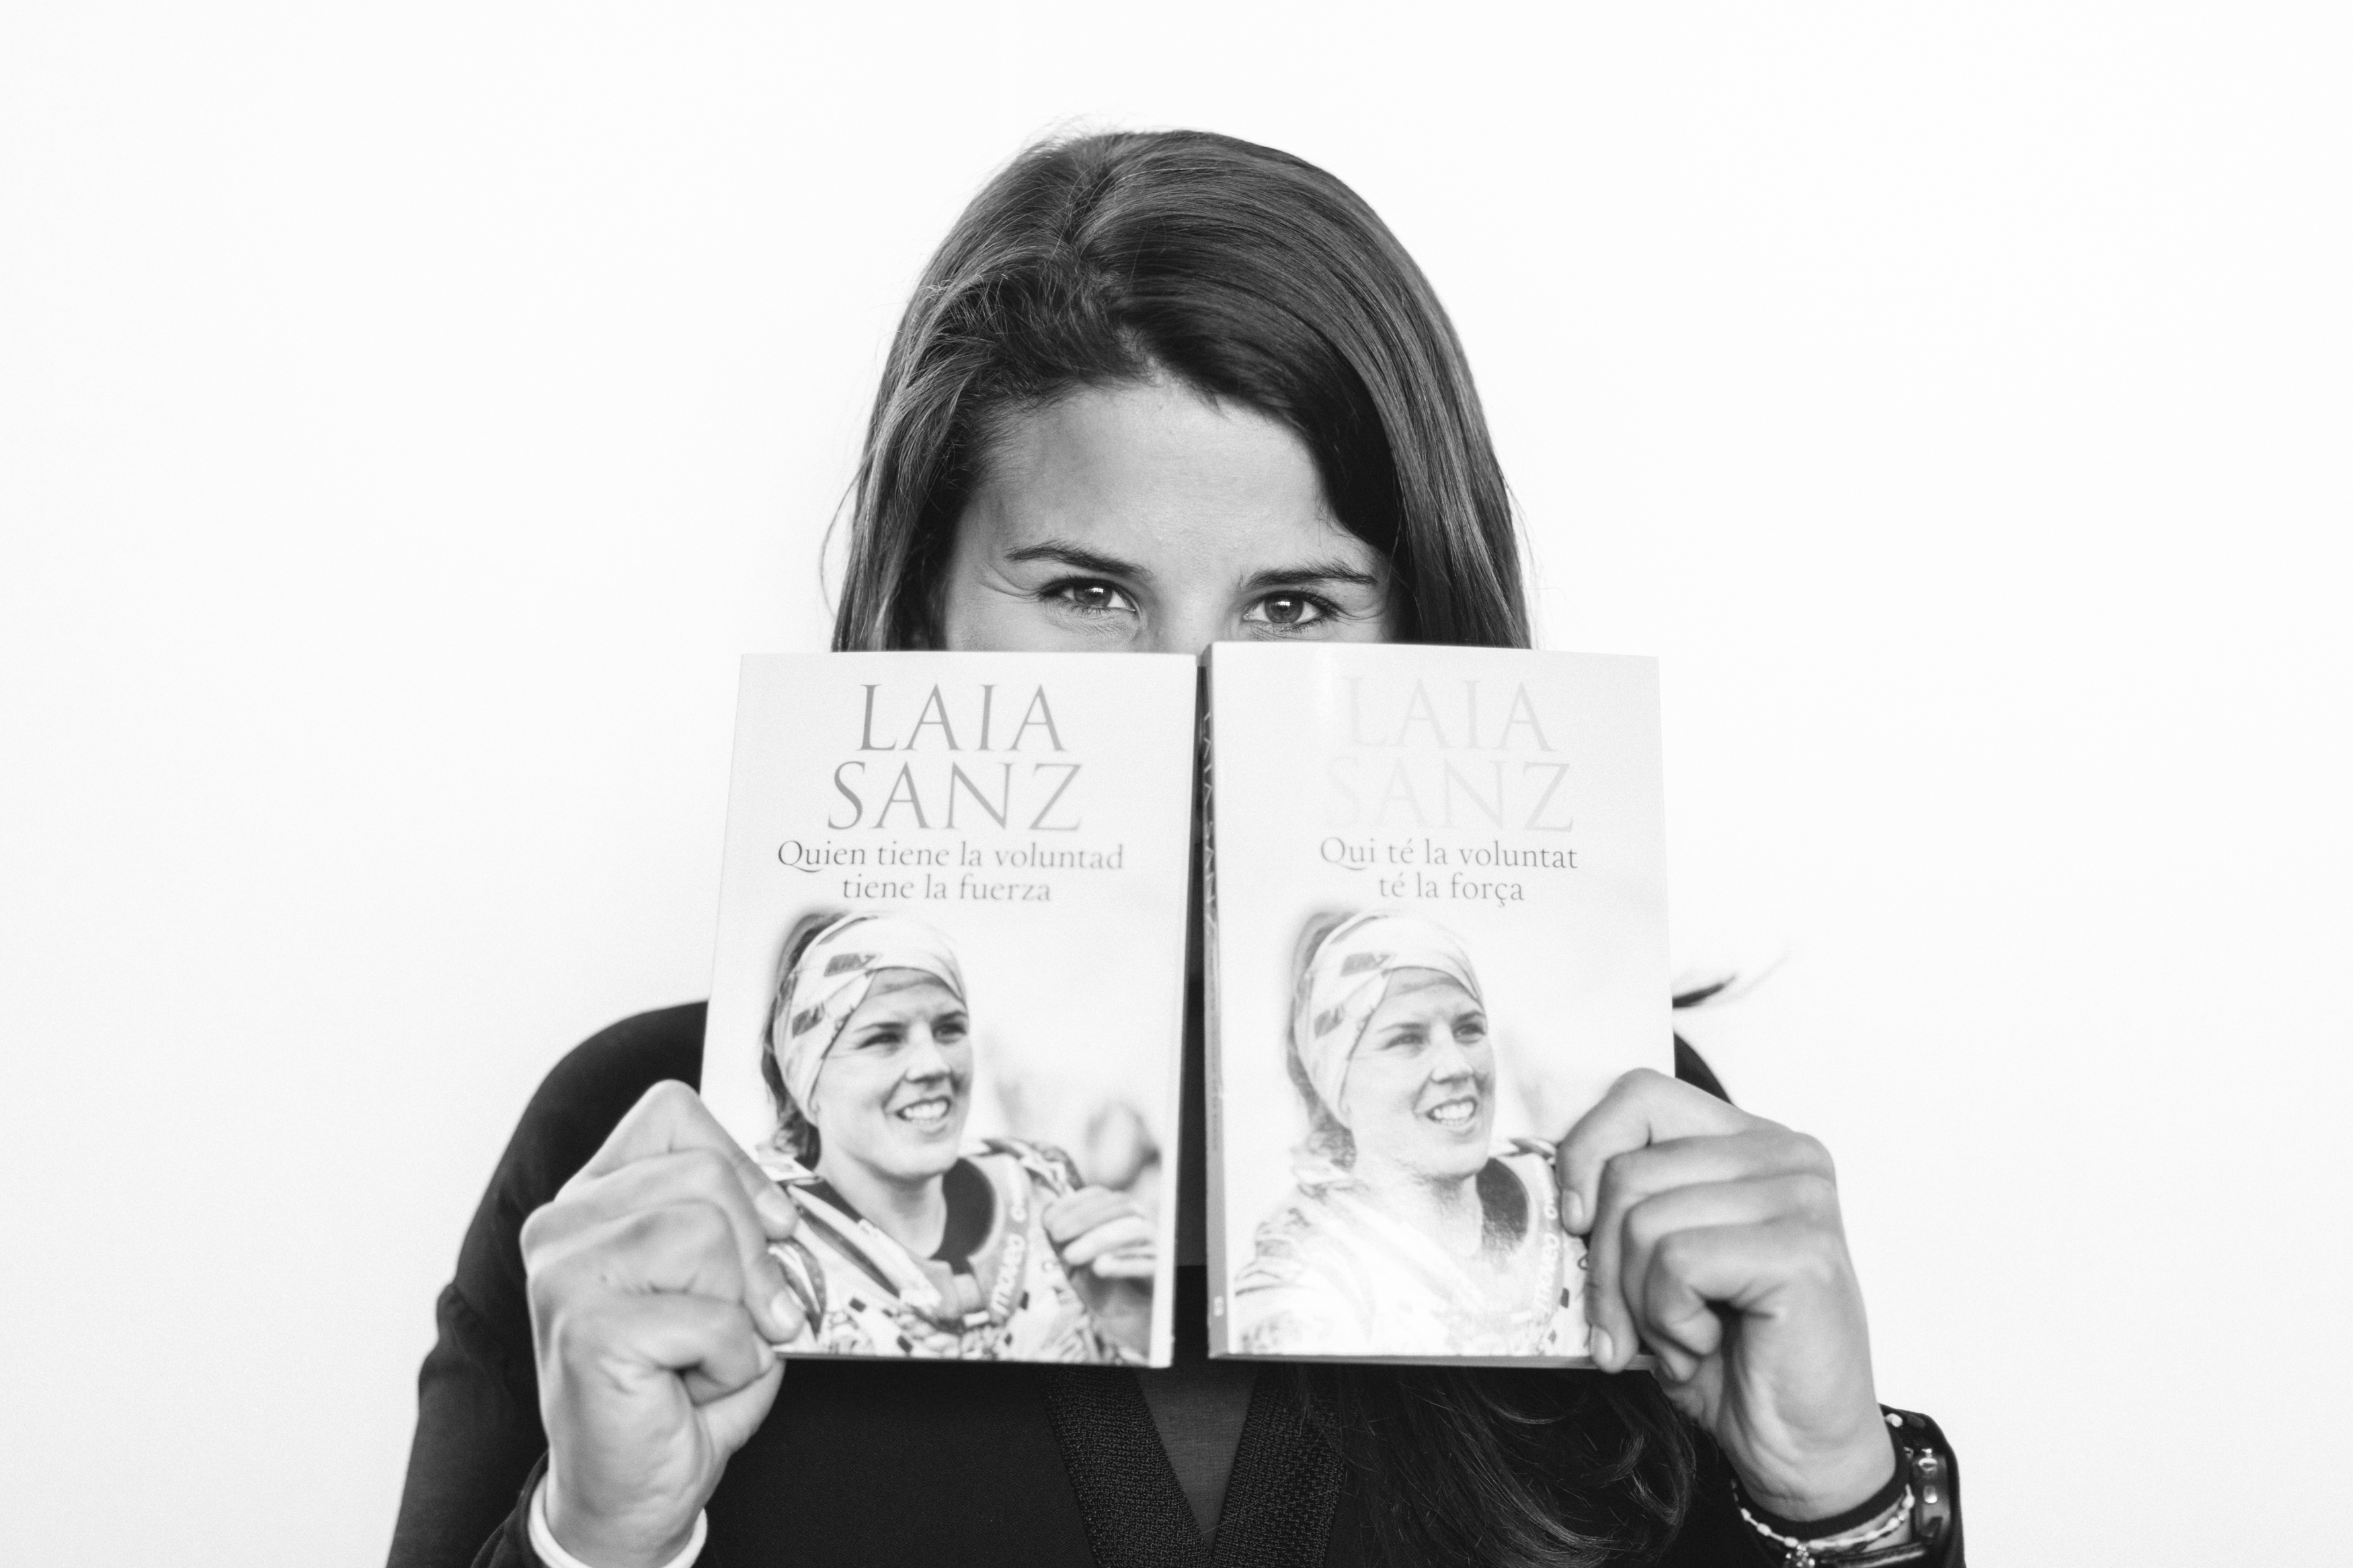 Лайа Санц е най известната жена участник на рали Дакар На